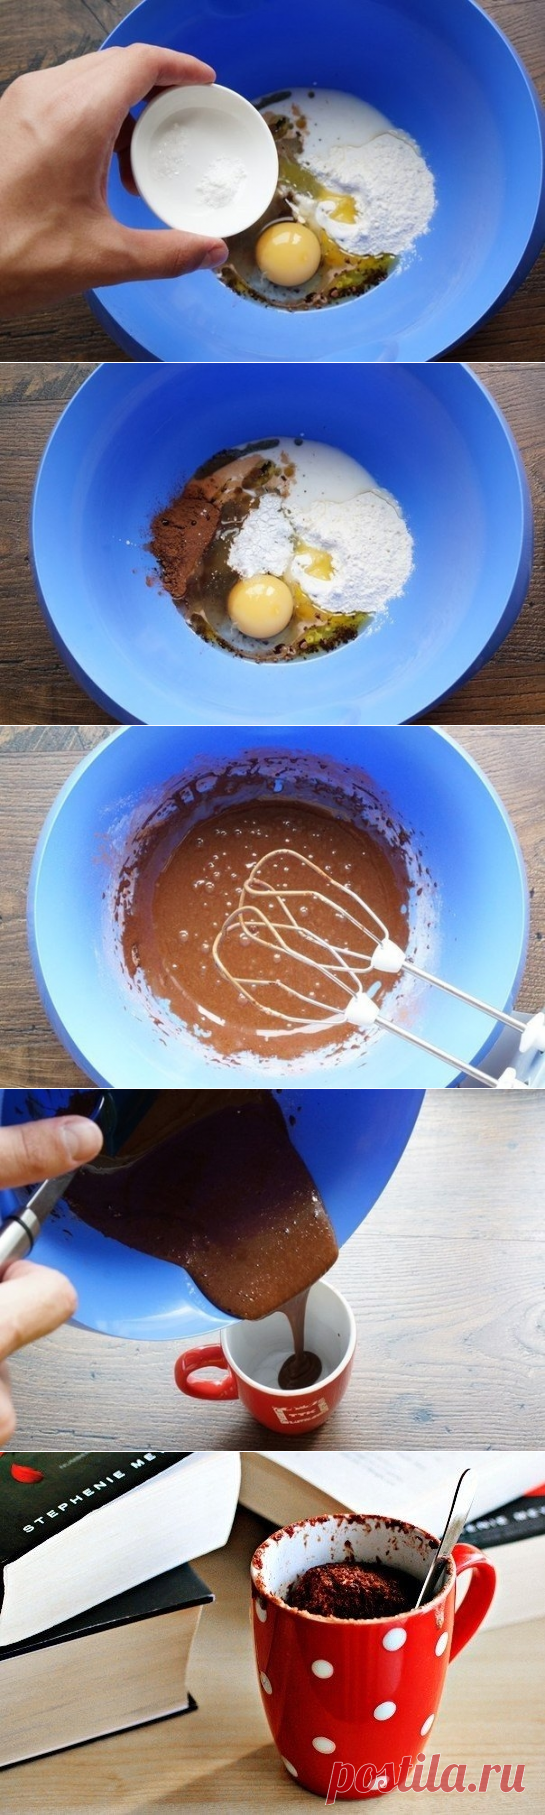 Как приготовить шоколадный кекс в чашке за 3 минуты - рецепт, ингридиенты и фотографии